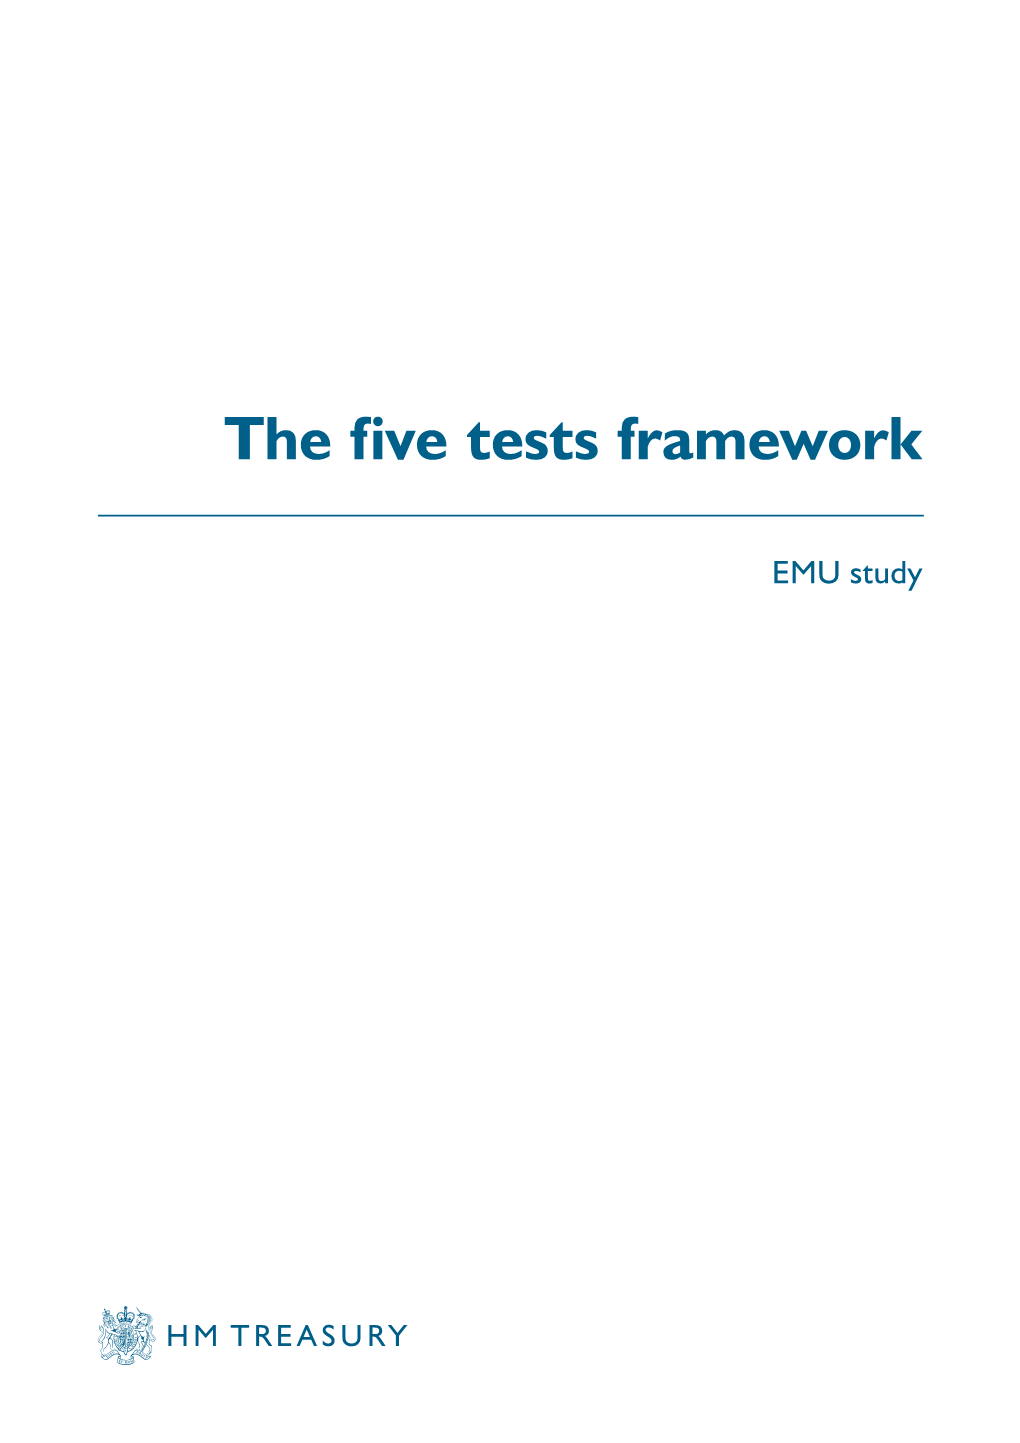 The Five Tests Framework